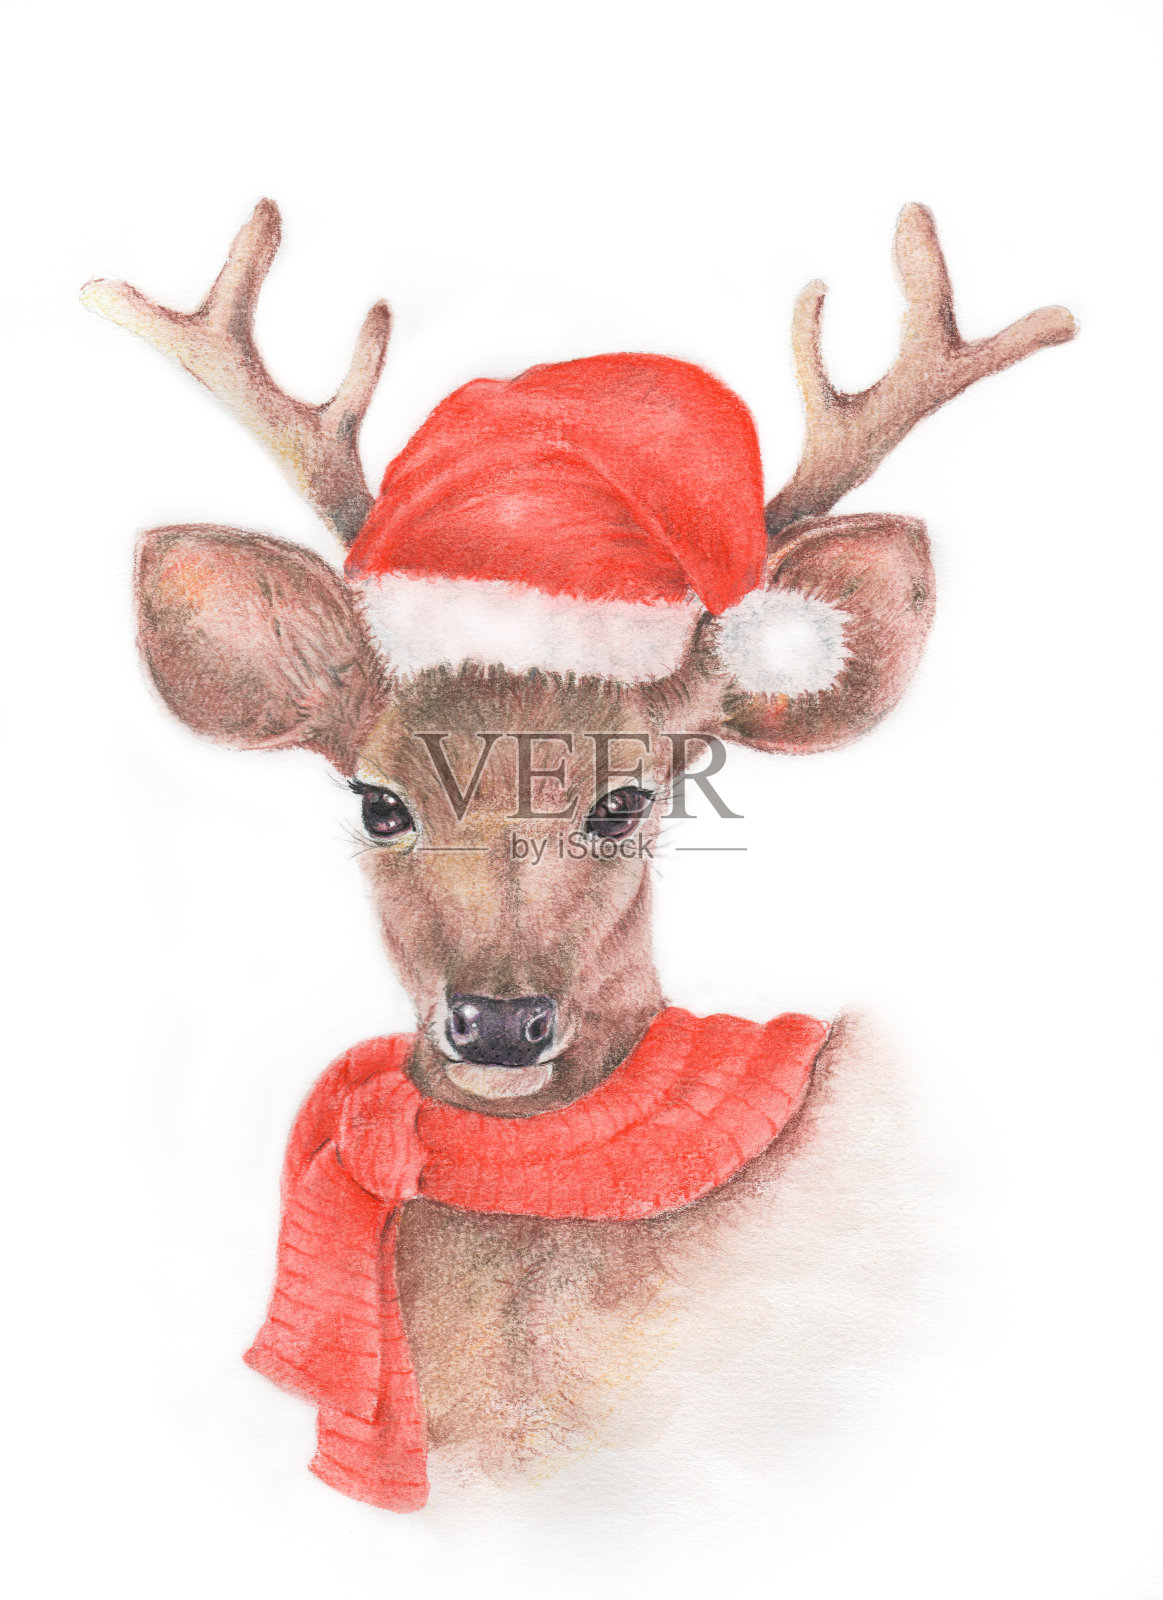 水彩和彩色铅笔画的鹿插画图片素材